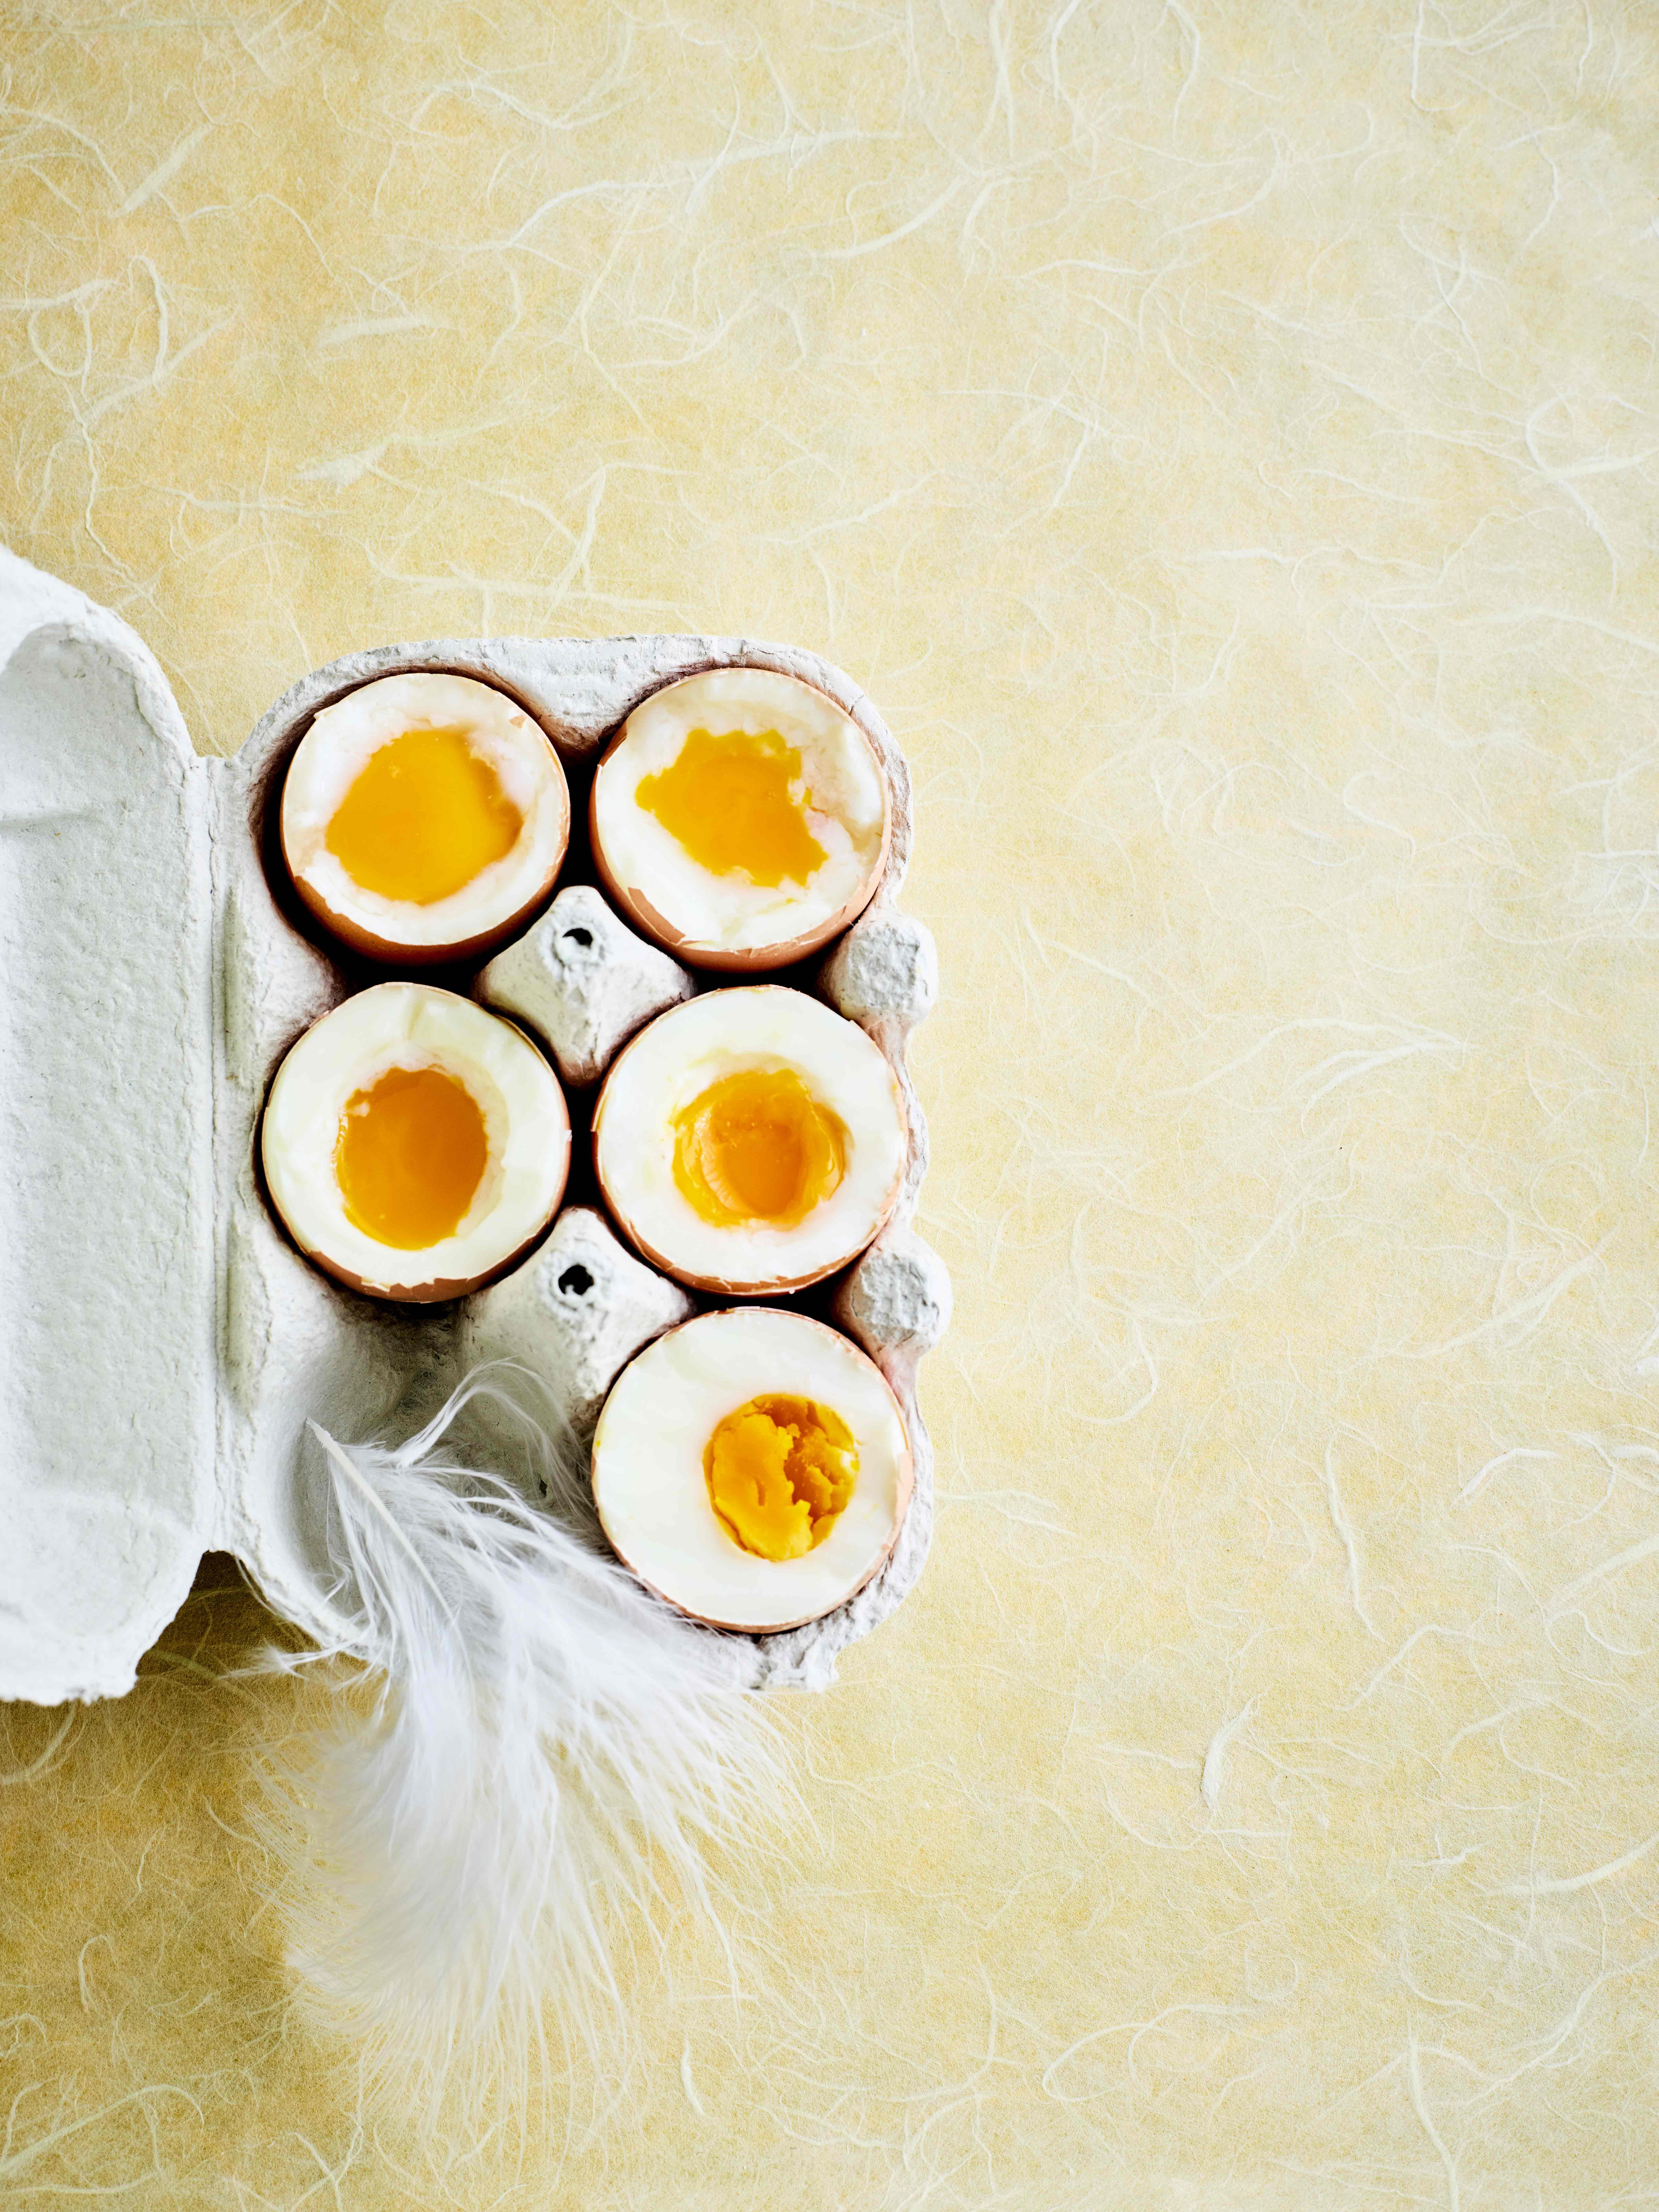 Een hardgekookt een zachtgekookt ei: wat is het gezondst? - Libelle Lekker